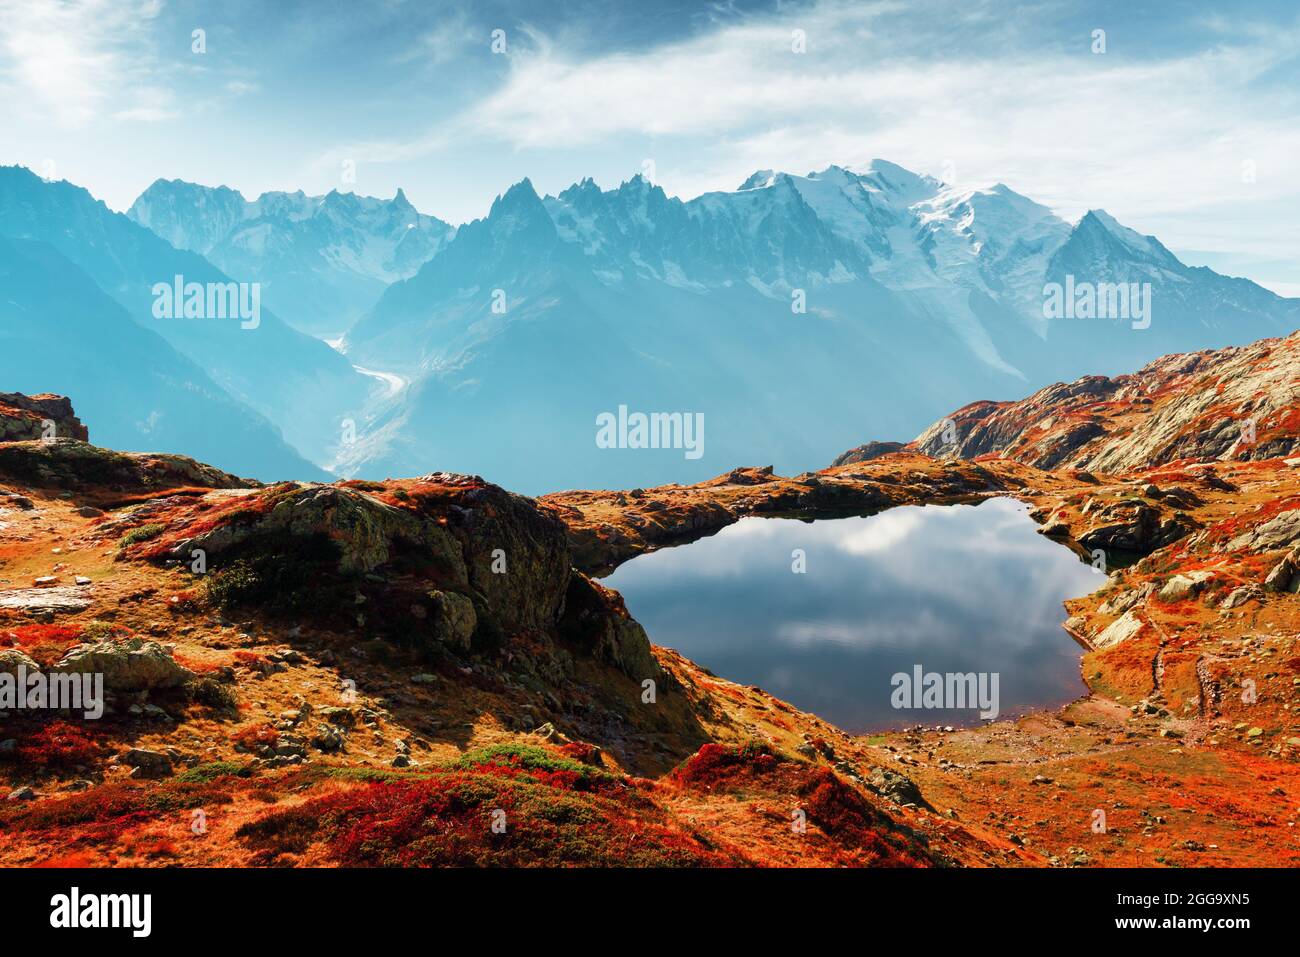 Tramonto colorato sul lago Chesery (Lac De Cheserys) nelle Alpi francesi. La catena montuosa del Monte Bianco sullo sfondo. Chamonix, Alpi Graiche. Fotografia di paesaggio Foto Stock